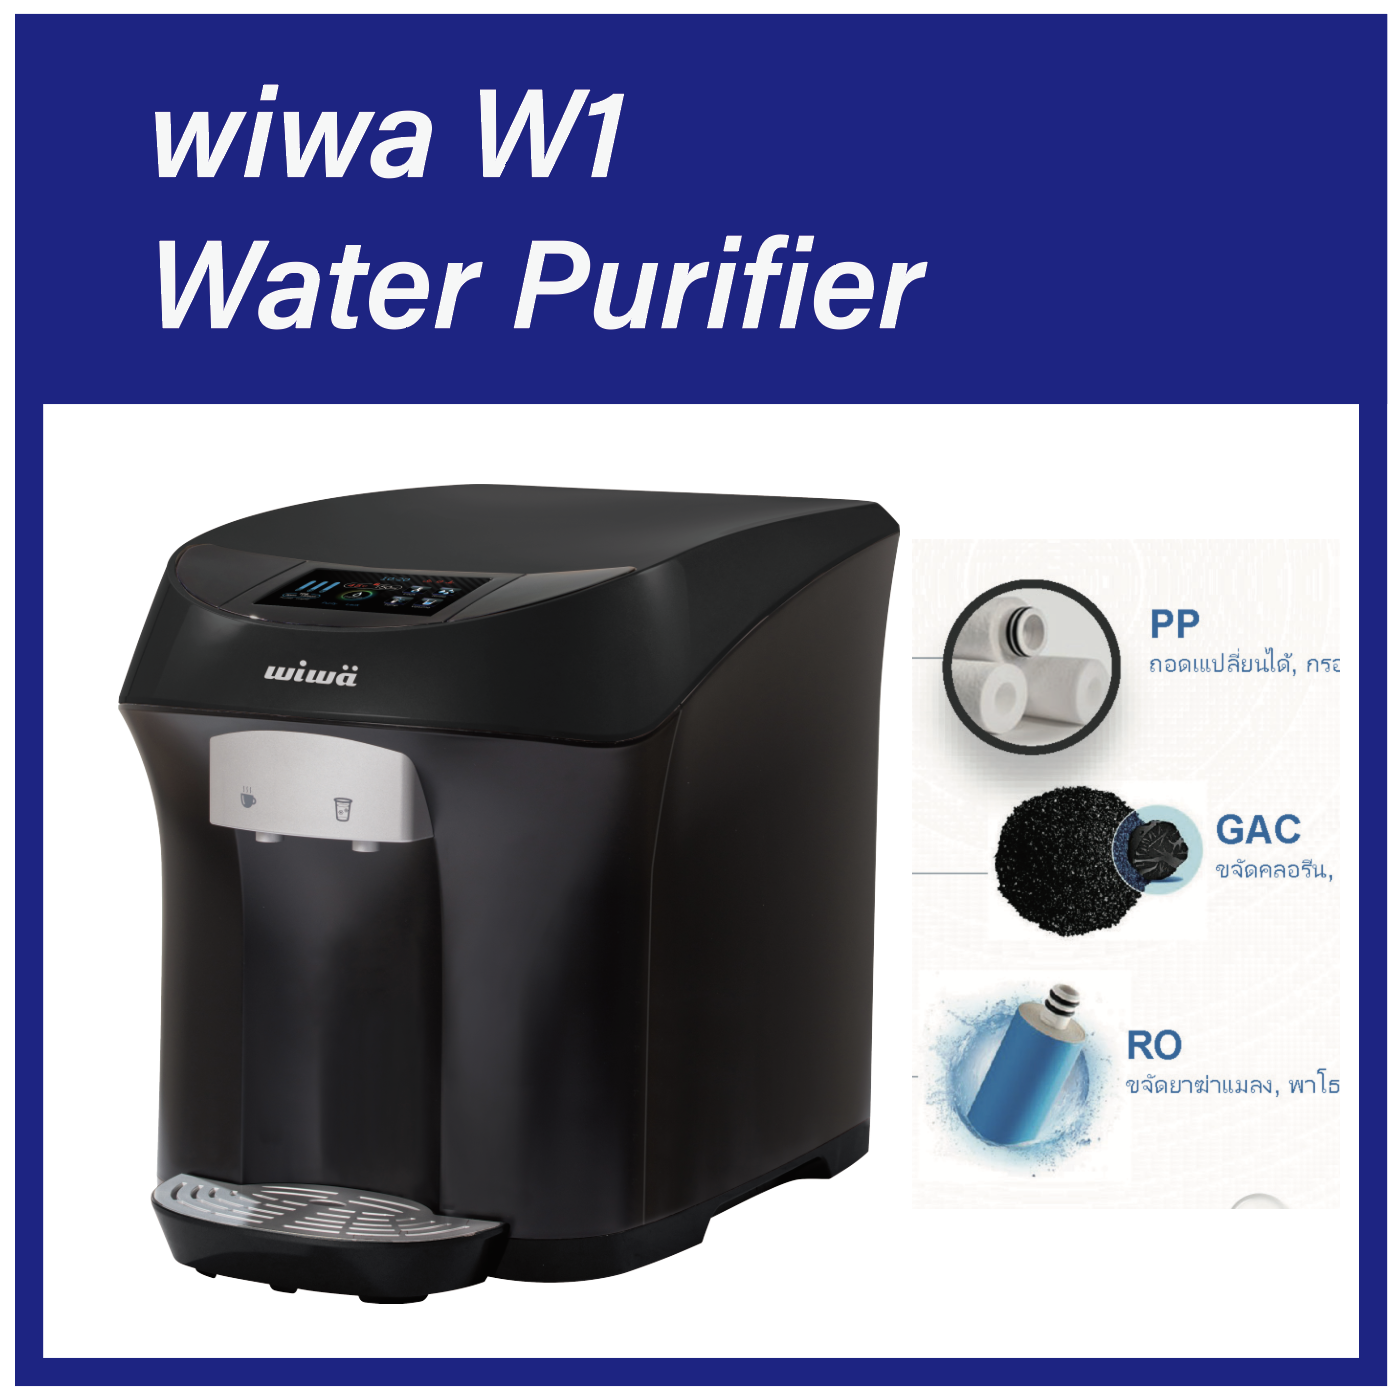 เครื่องกรองน้ำWIWÄ - Water purifier รุ่น W1 -เครื่องกรองน้ํา/ชุดไส้กรองน้ํา 4 ขั้นตอน/wiwa WIWÄ Water Purifier Model W1 Water Filter 4 steps Cold and Hot feature